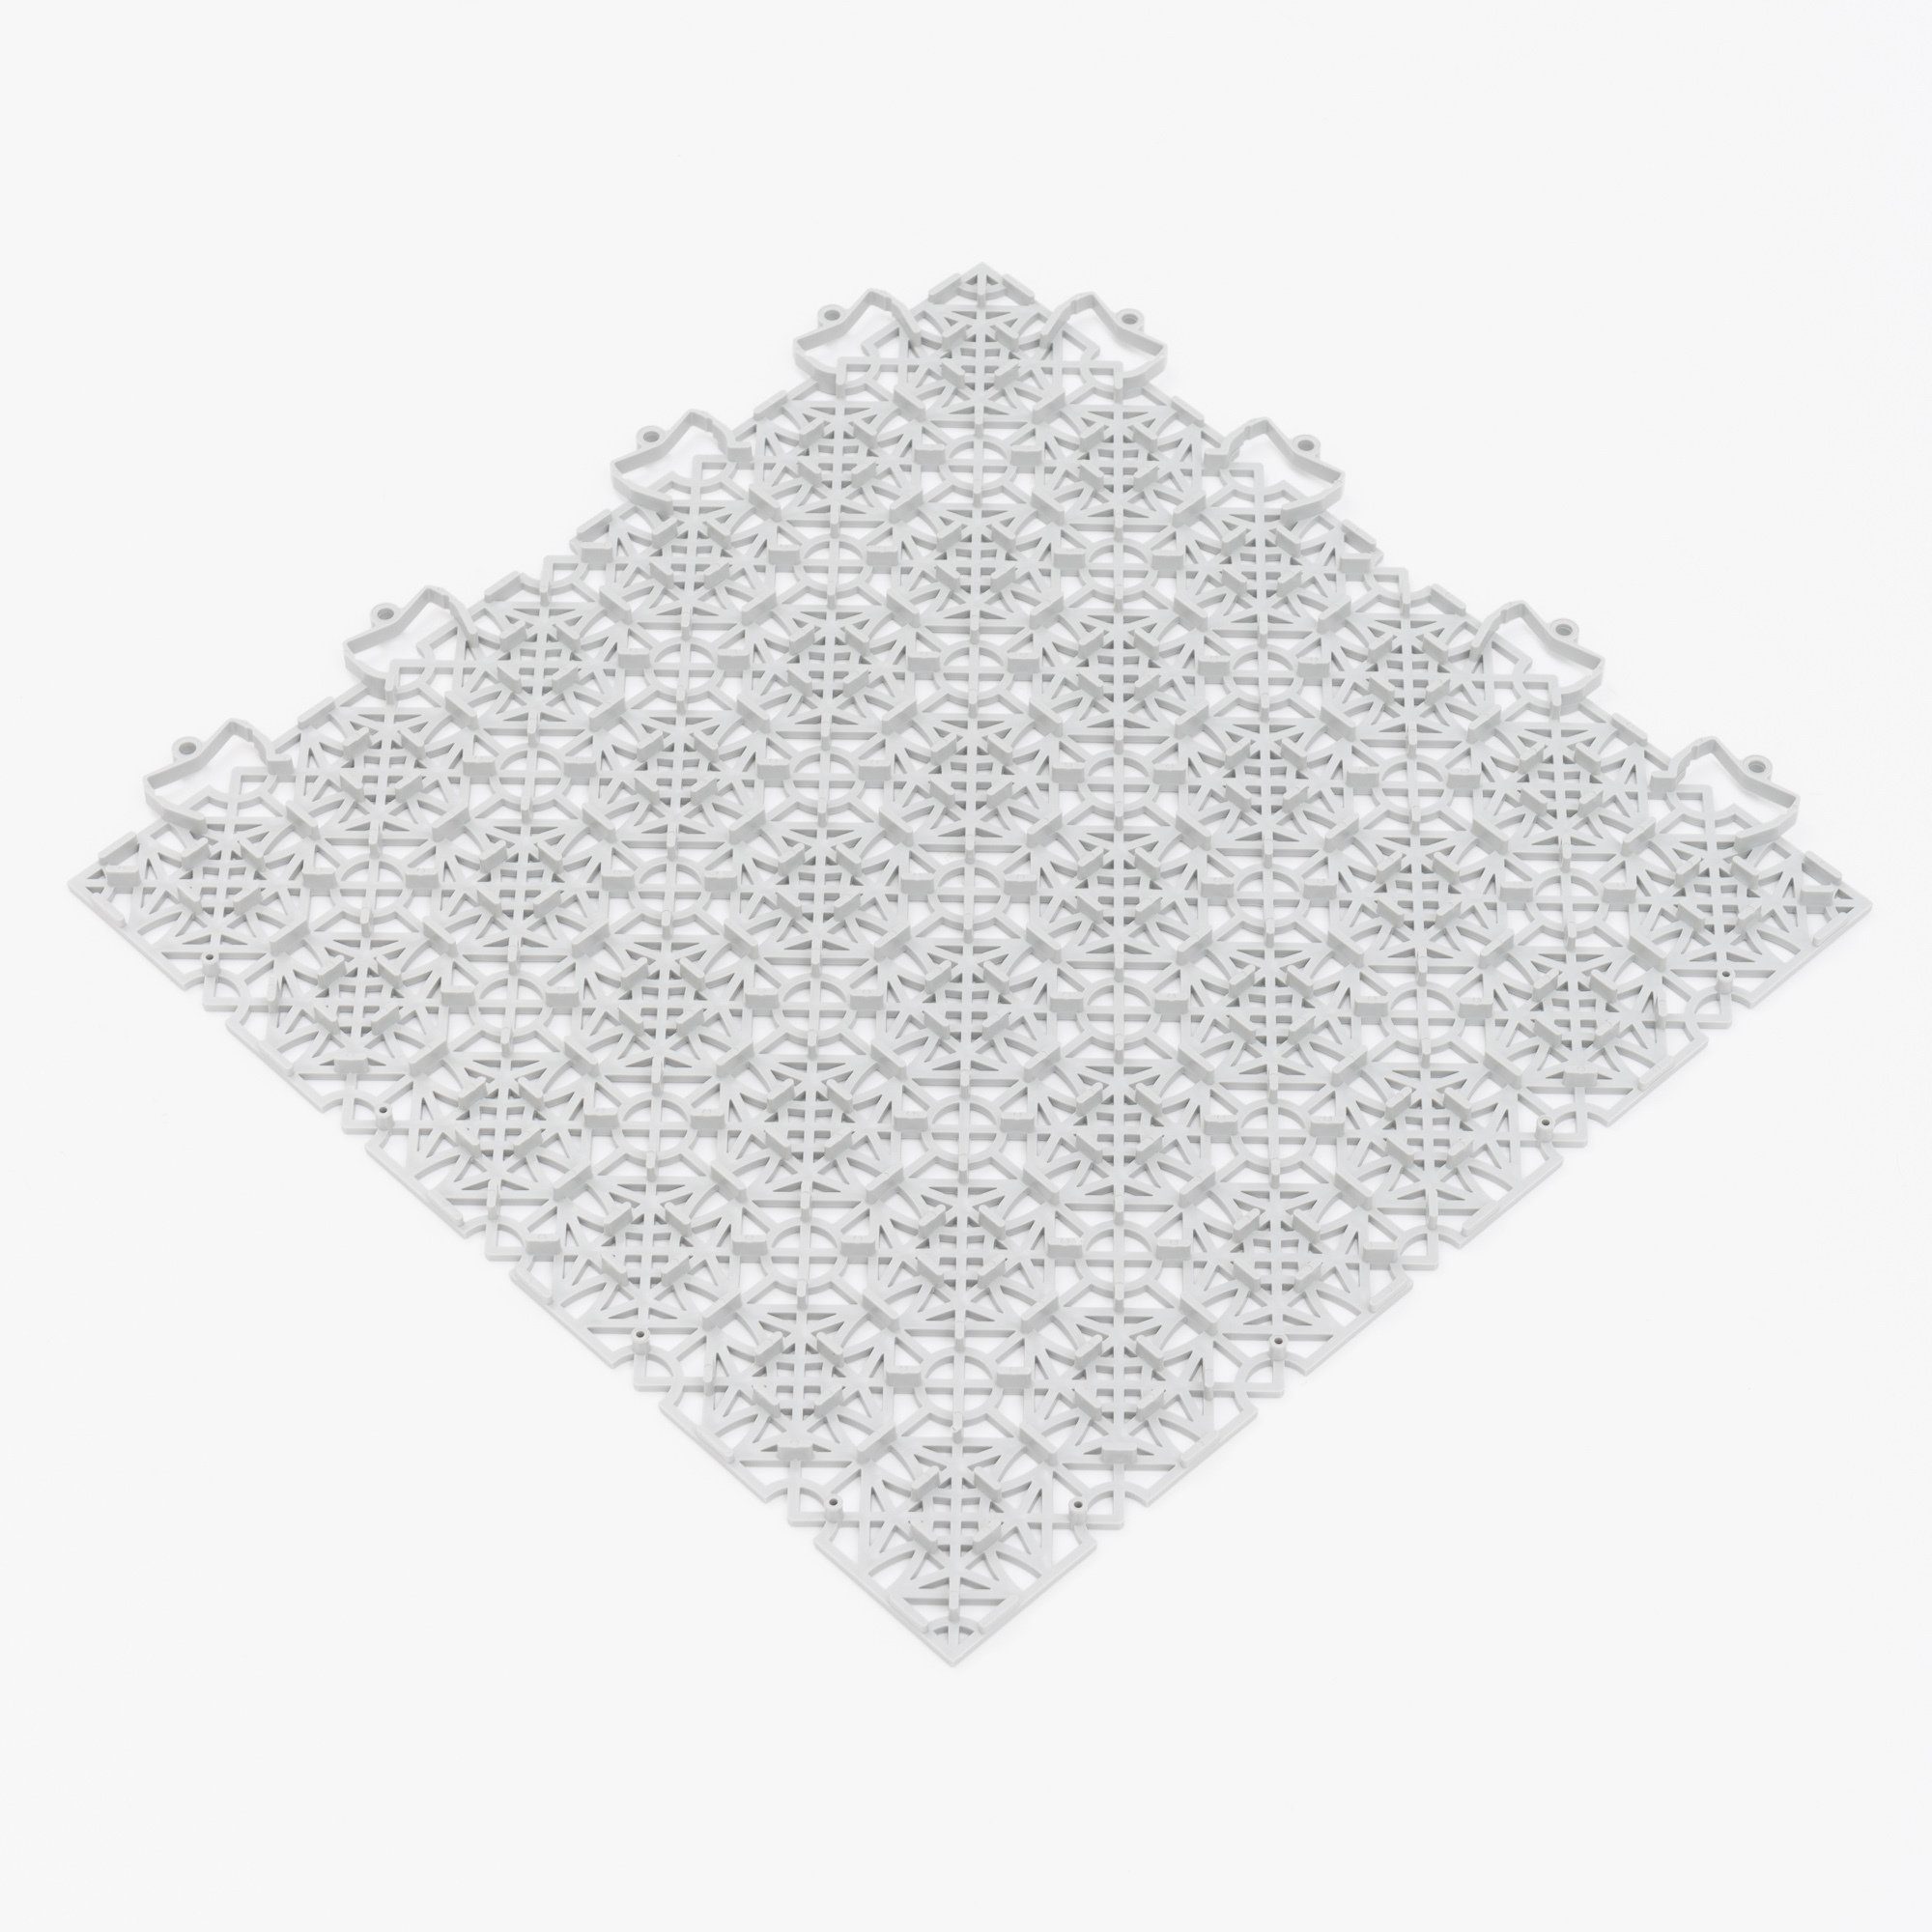 Klicksystem Bodenfliese 38x38, Pergamon 100% Grau mit Ibiza, Bodenfliese Polypropylen Kunststoff